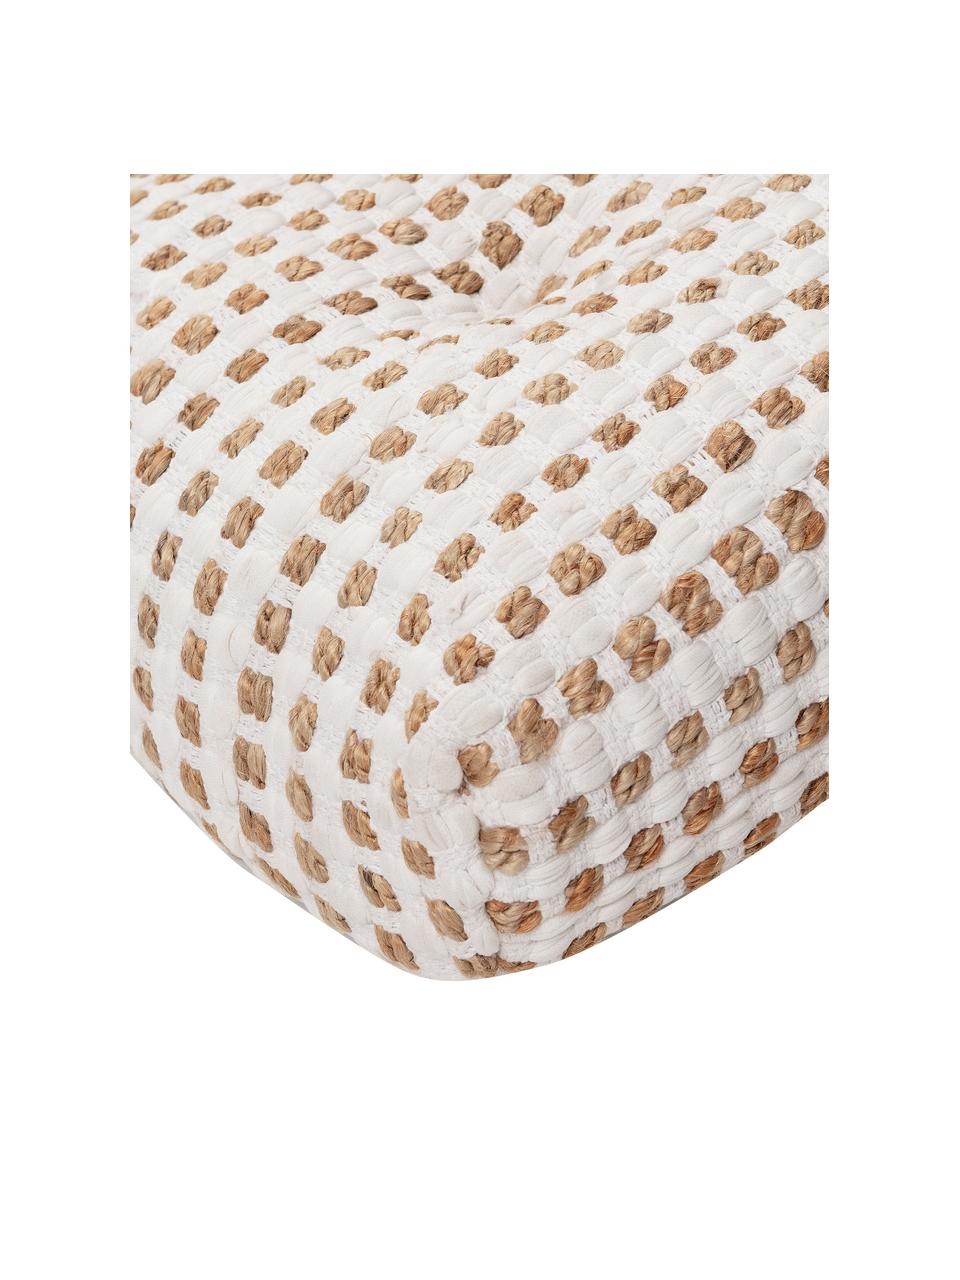 Poduszka podłogowa z bawełny/juty w stylu boho Fiesta, Tapicerka: 55% bawełna chindi, 45% j, Biały, beżowy, S 60 x W 13 cm